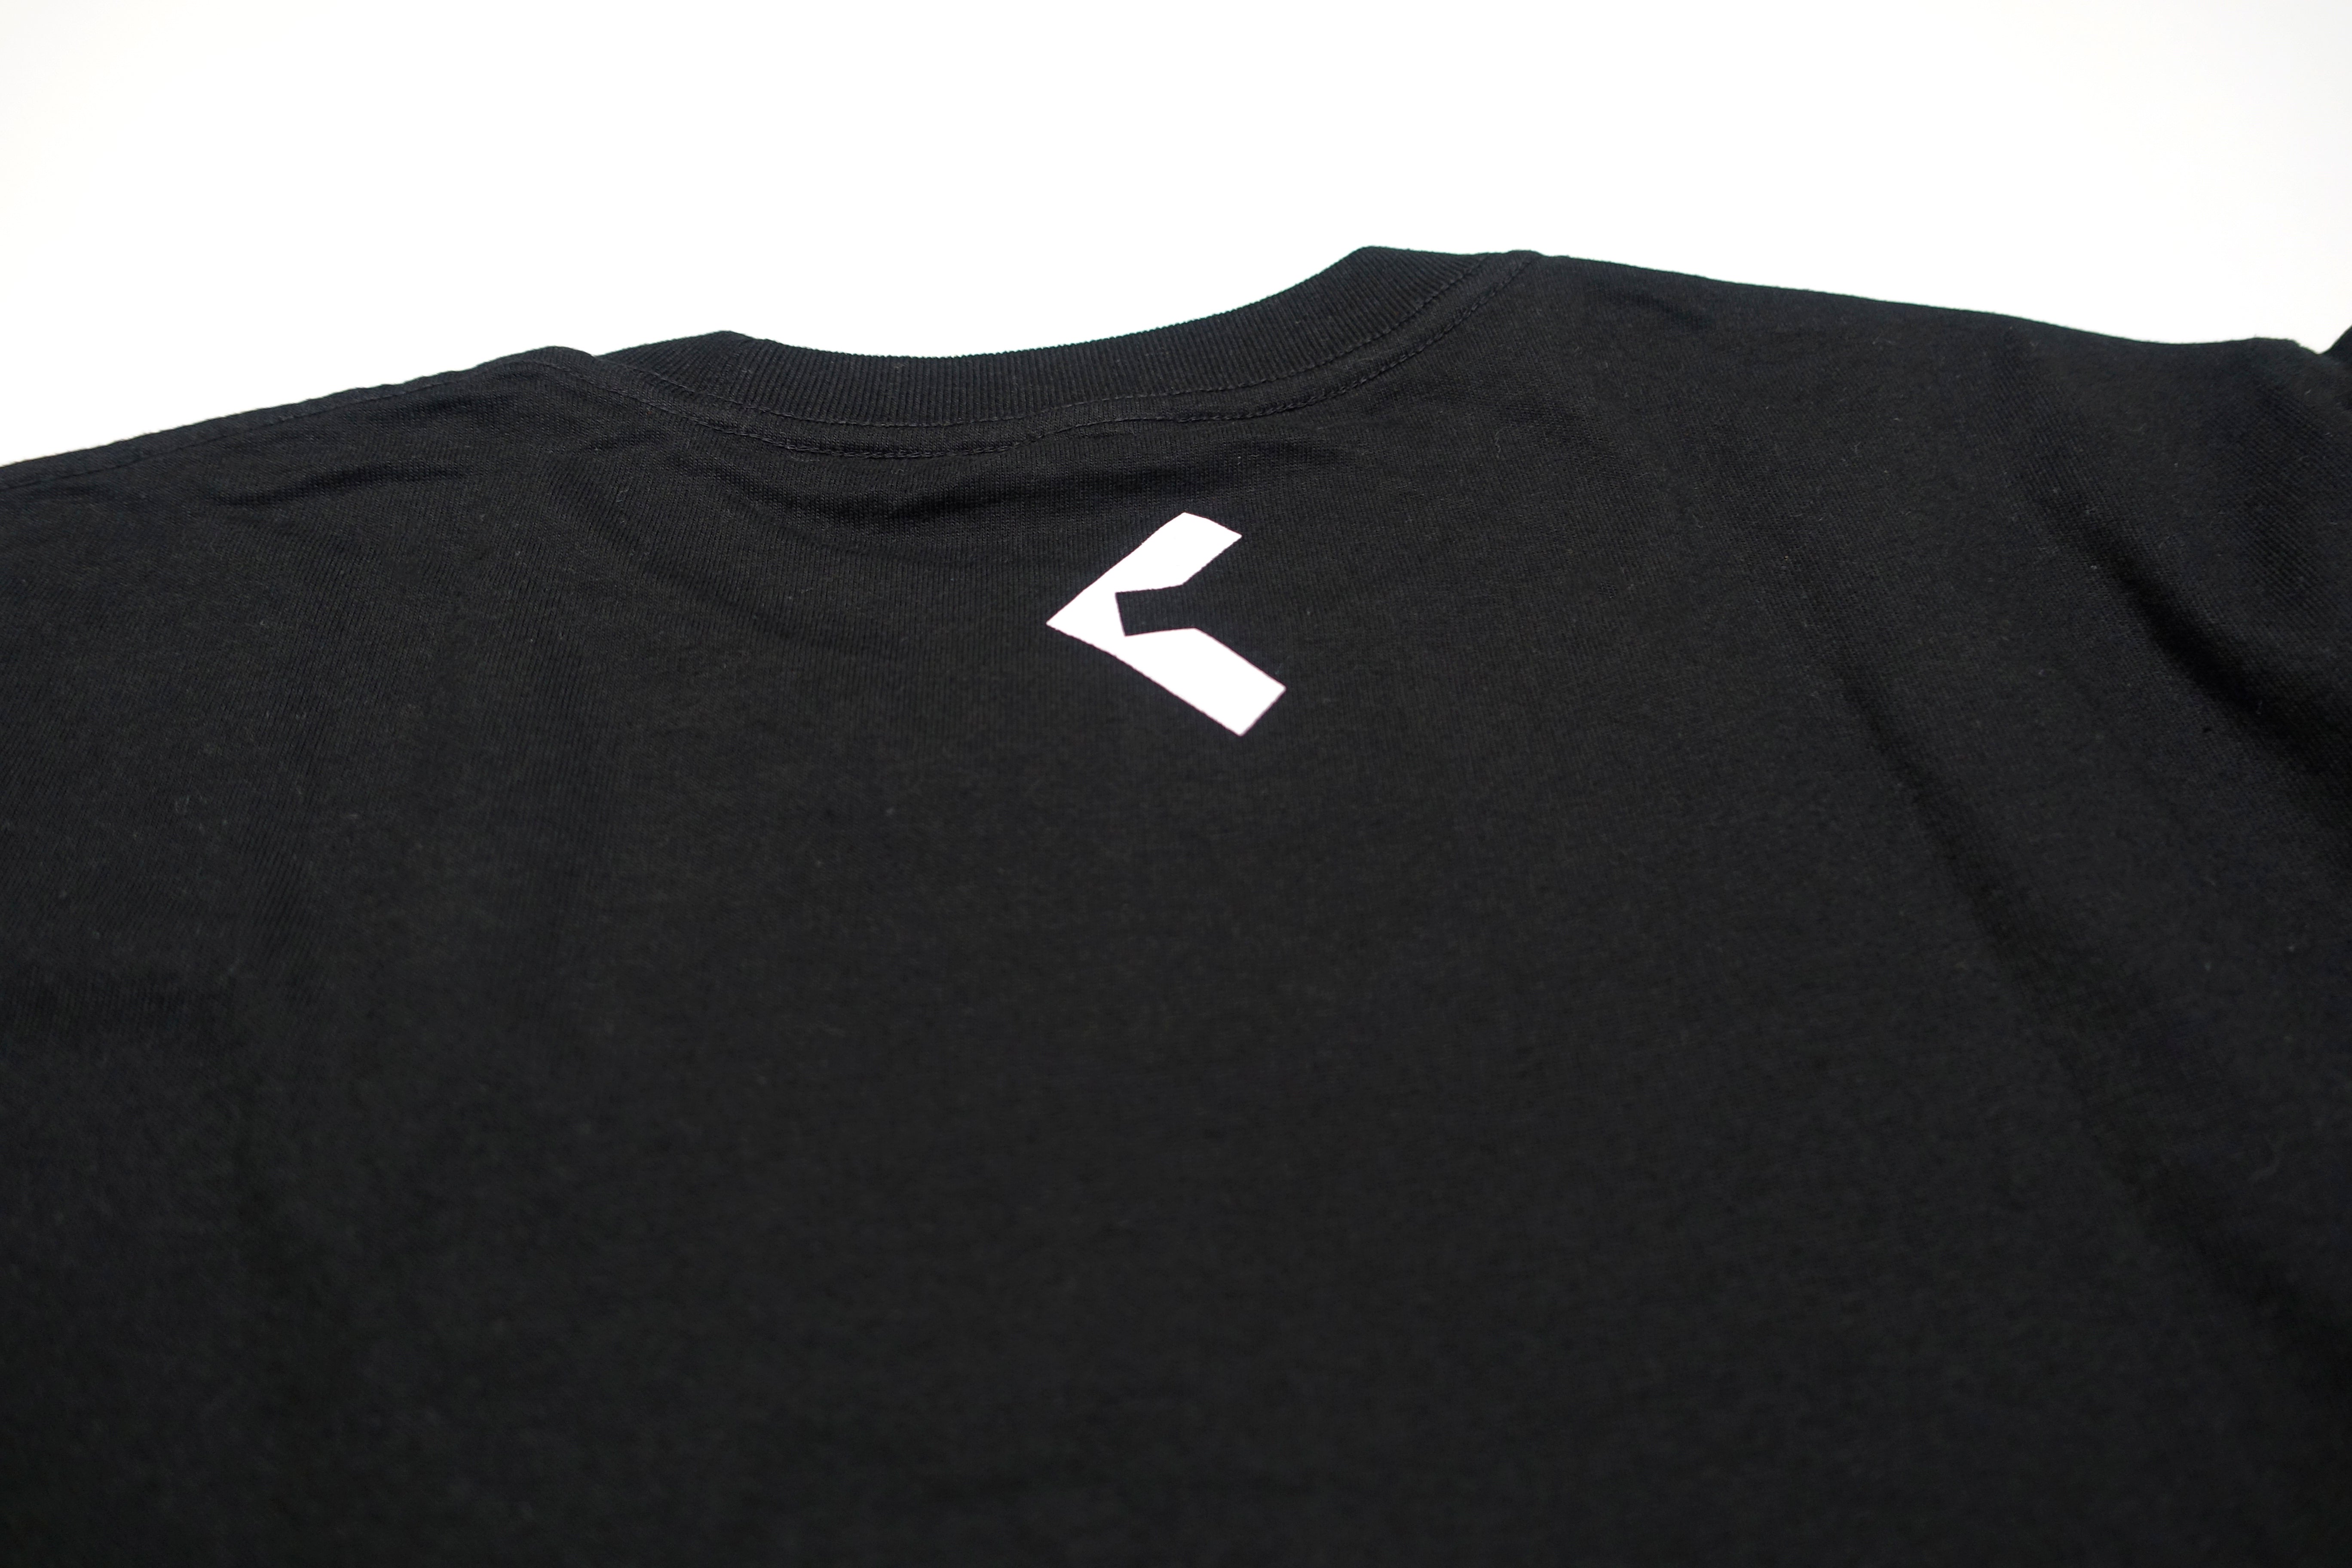 Squarepusher ‎– Damogen Furies 2015 Promo Shirt Size Large